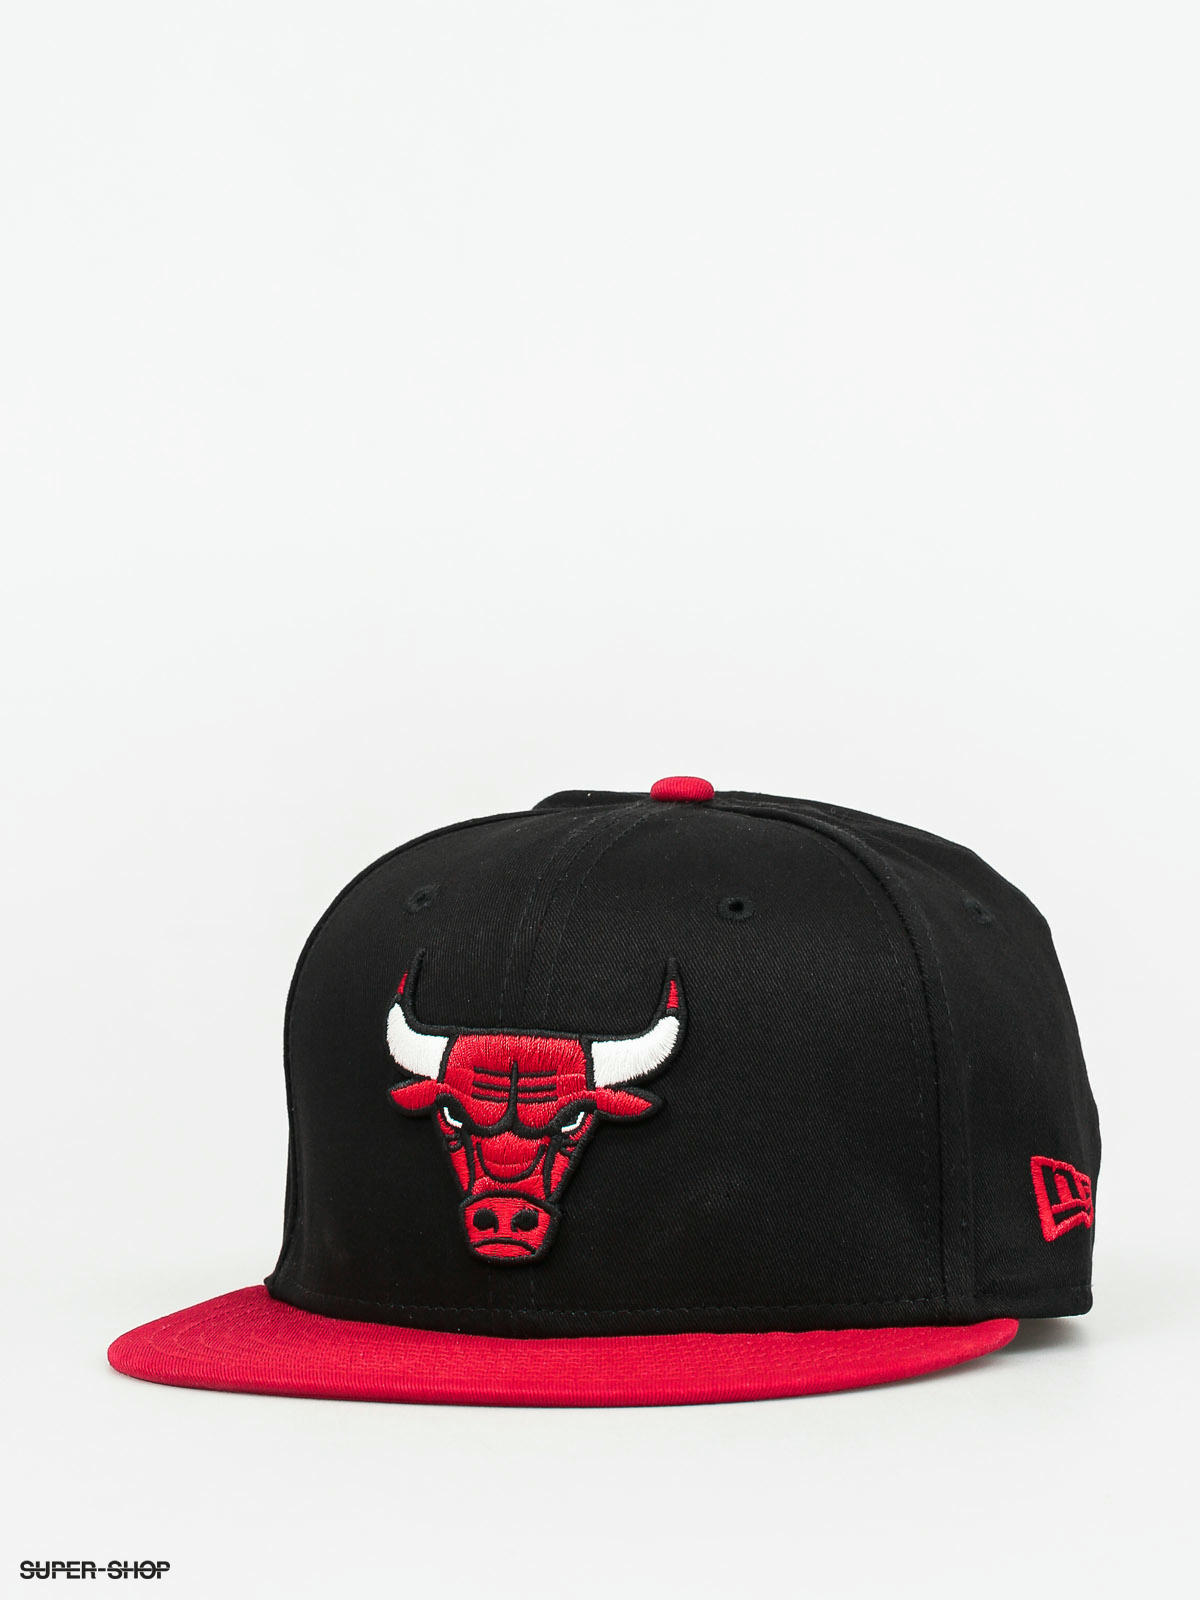 chicago bulls cap black